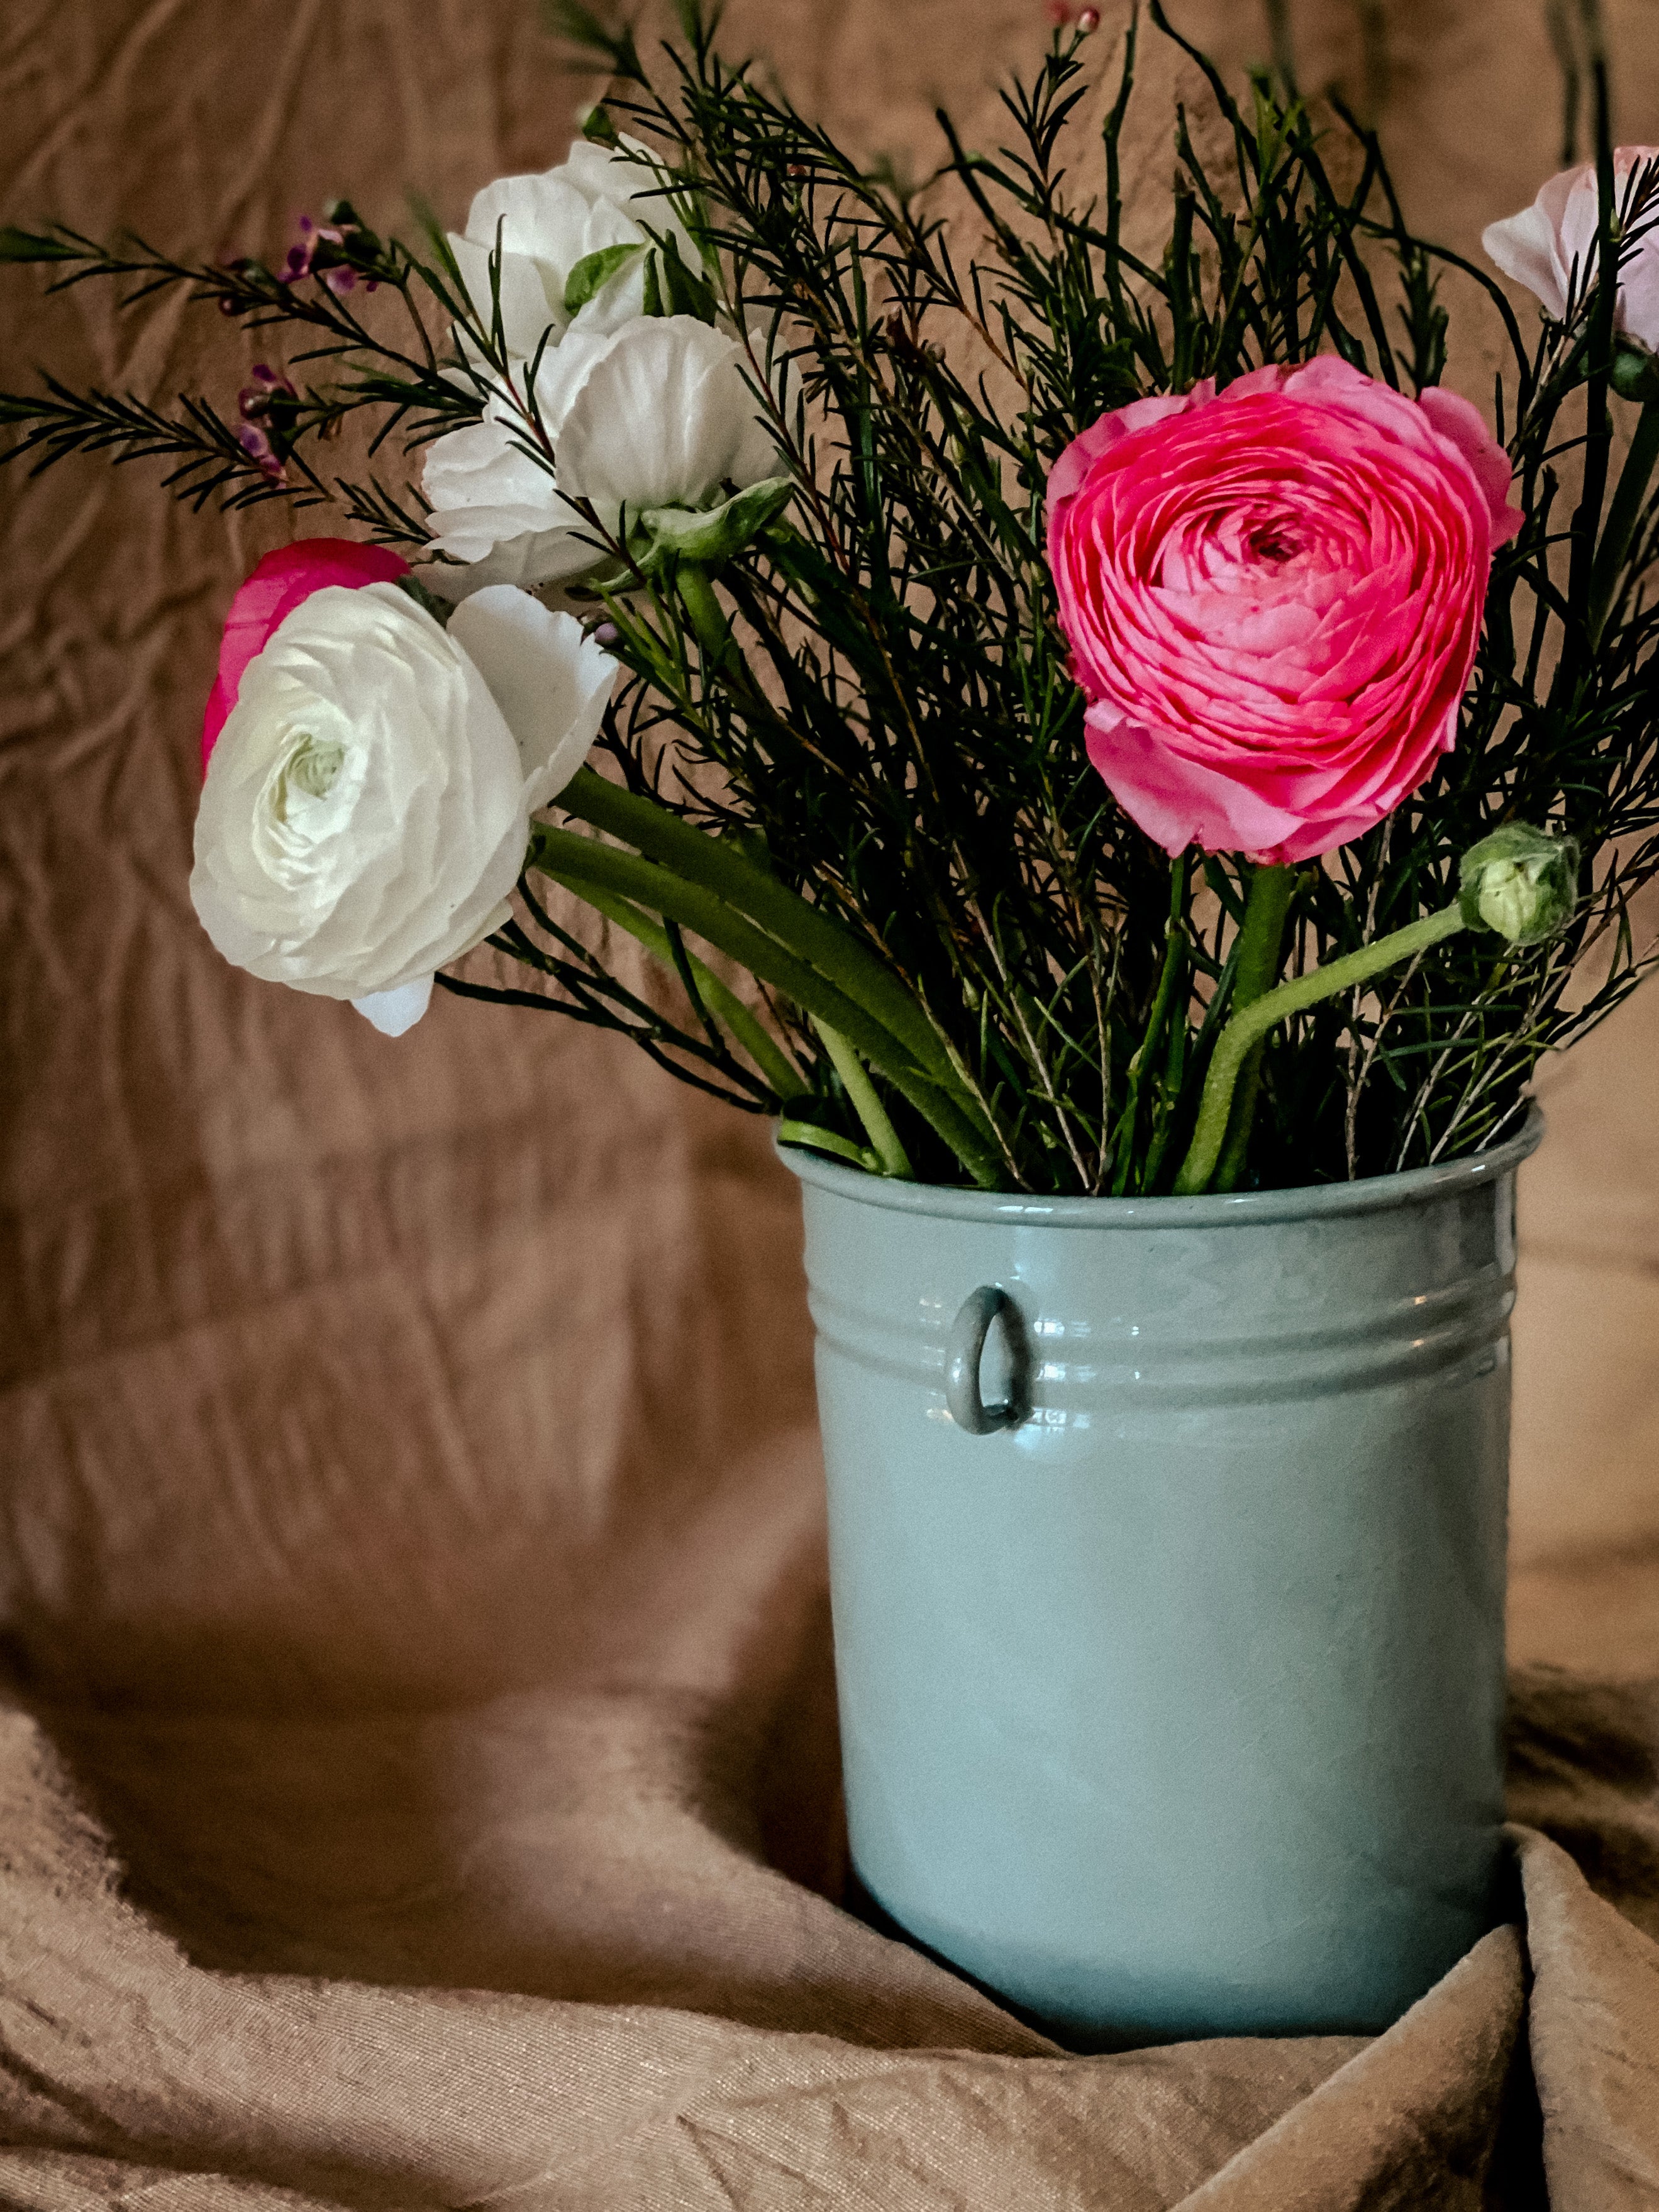 Flower vase / utensil in green-gray